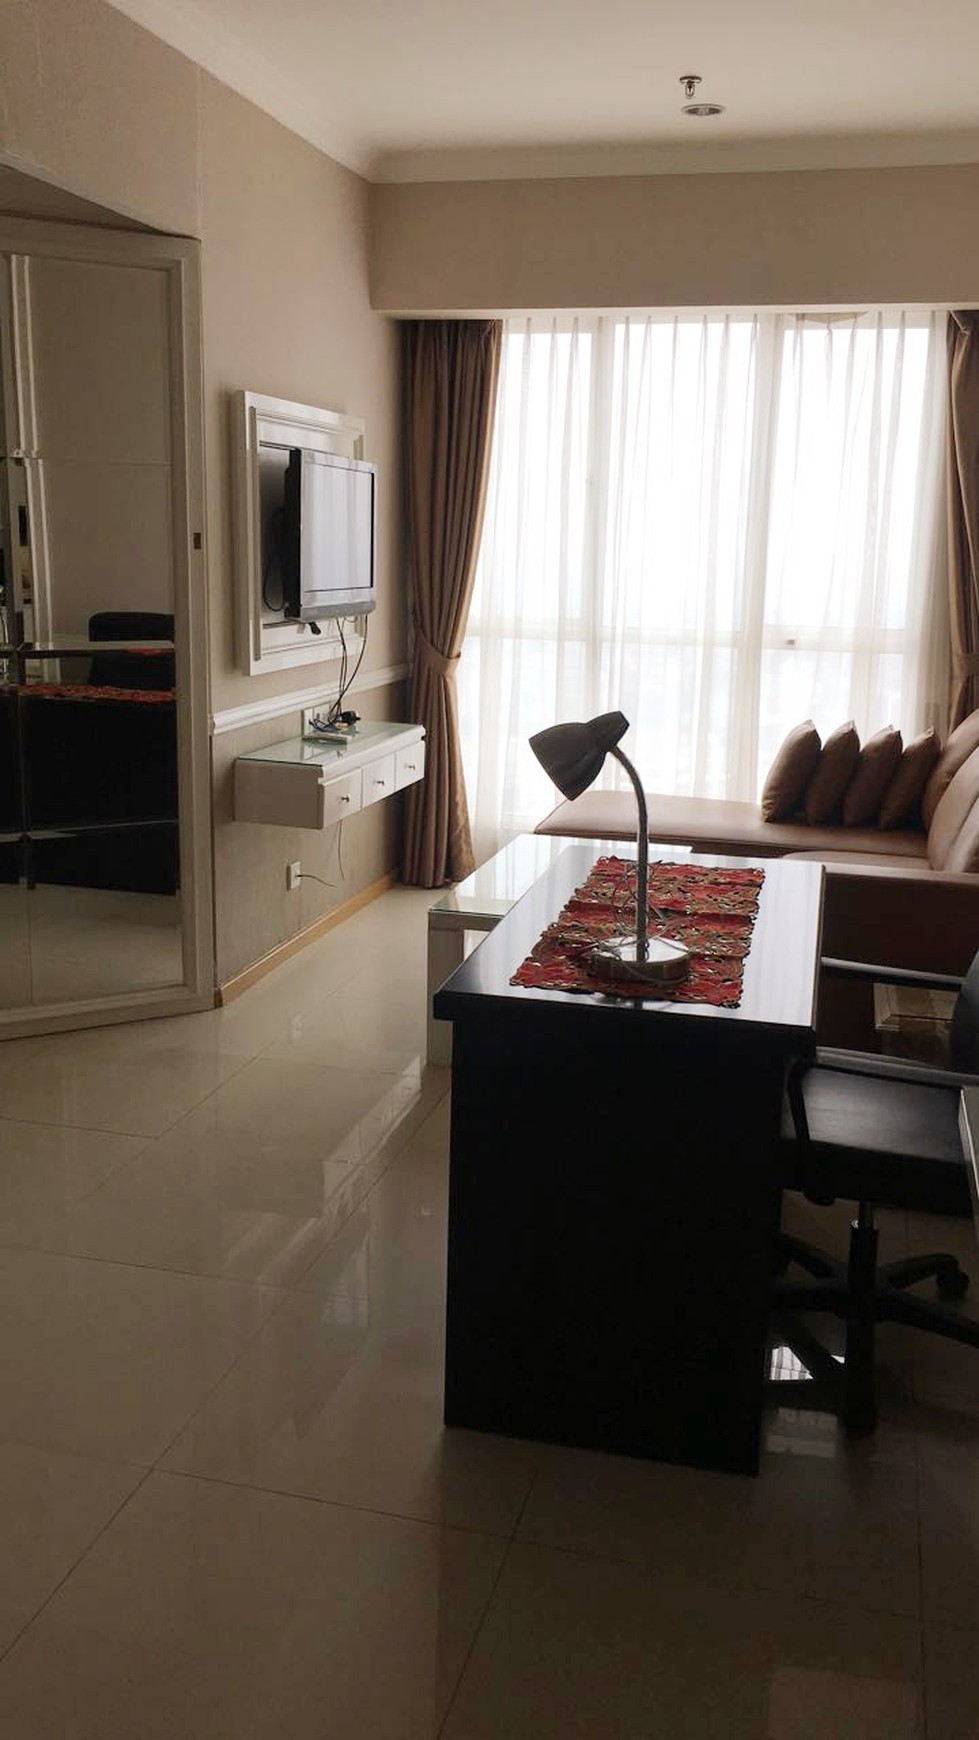 Apartemen Full Furnish Keren Di Tengah Kota Hot Sale di Gandaria Height Jakarta Selatan